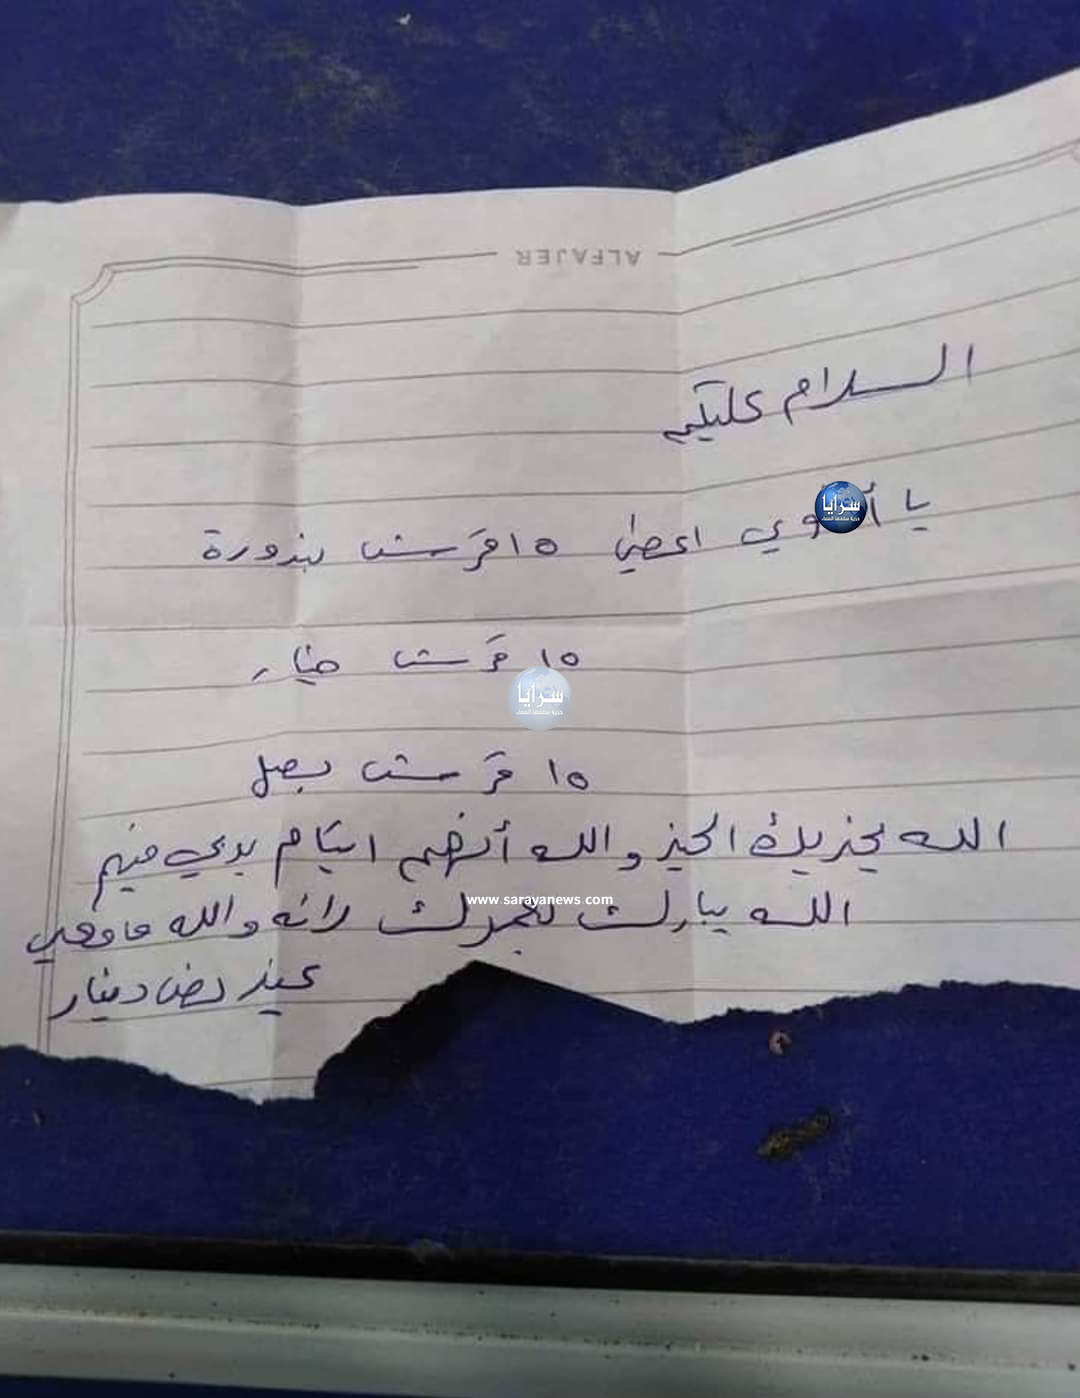 رسالة أم أردنية لبائع خضار : “والله ما معي غير نص دينار” تثير مواقع التواصل الاجتماعي  